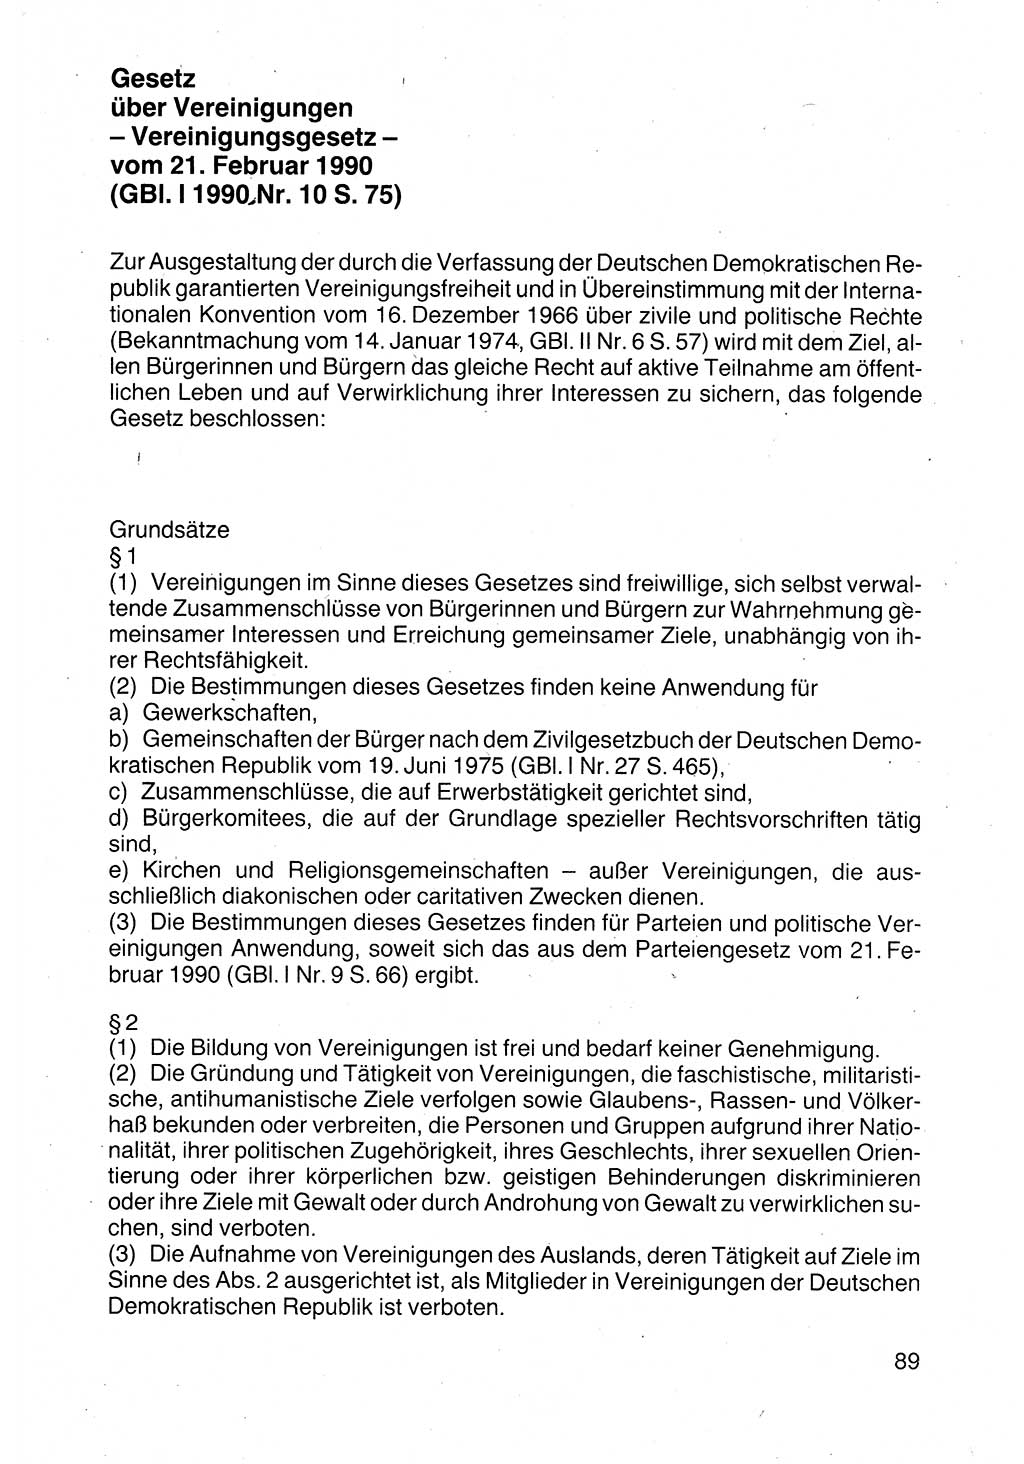 Politische Parteien und Bewegungen der DDR (Deutsche Demokratische Republik) über sich selbst 1990, Seite 89 (Pol. Part. Bew. DDR 1990, S. 89)